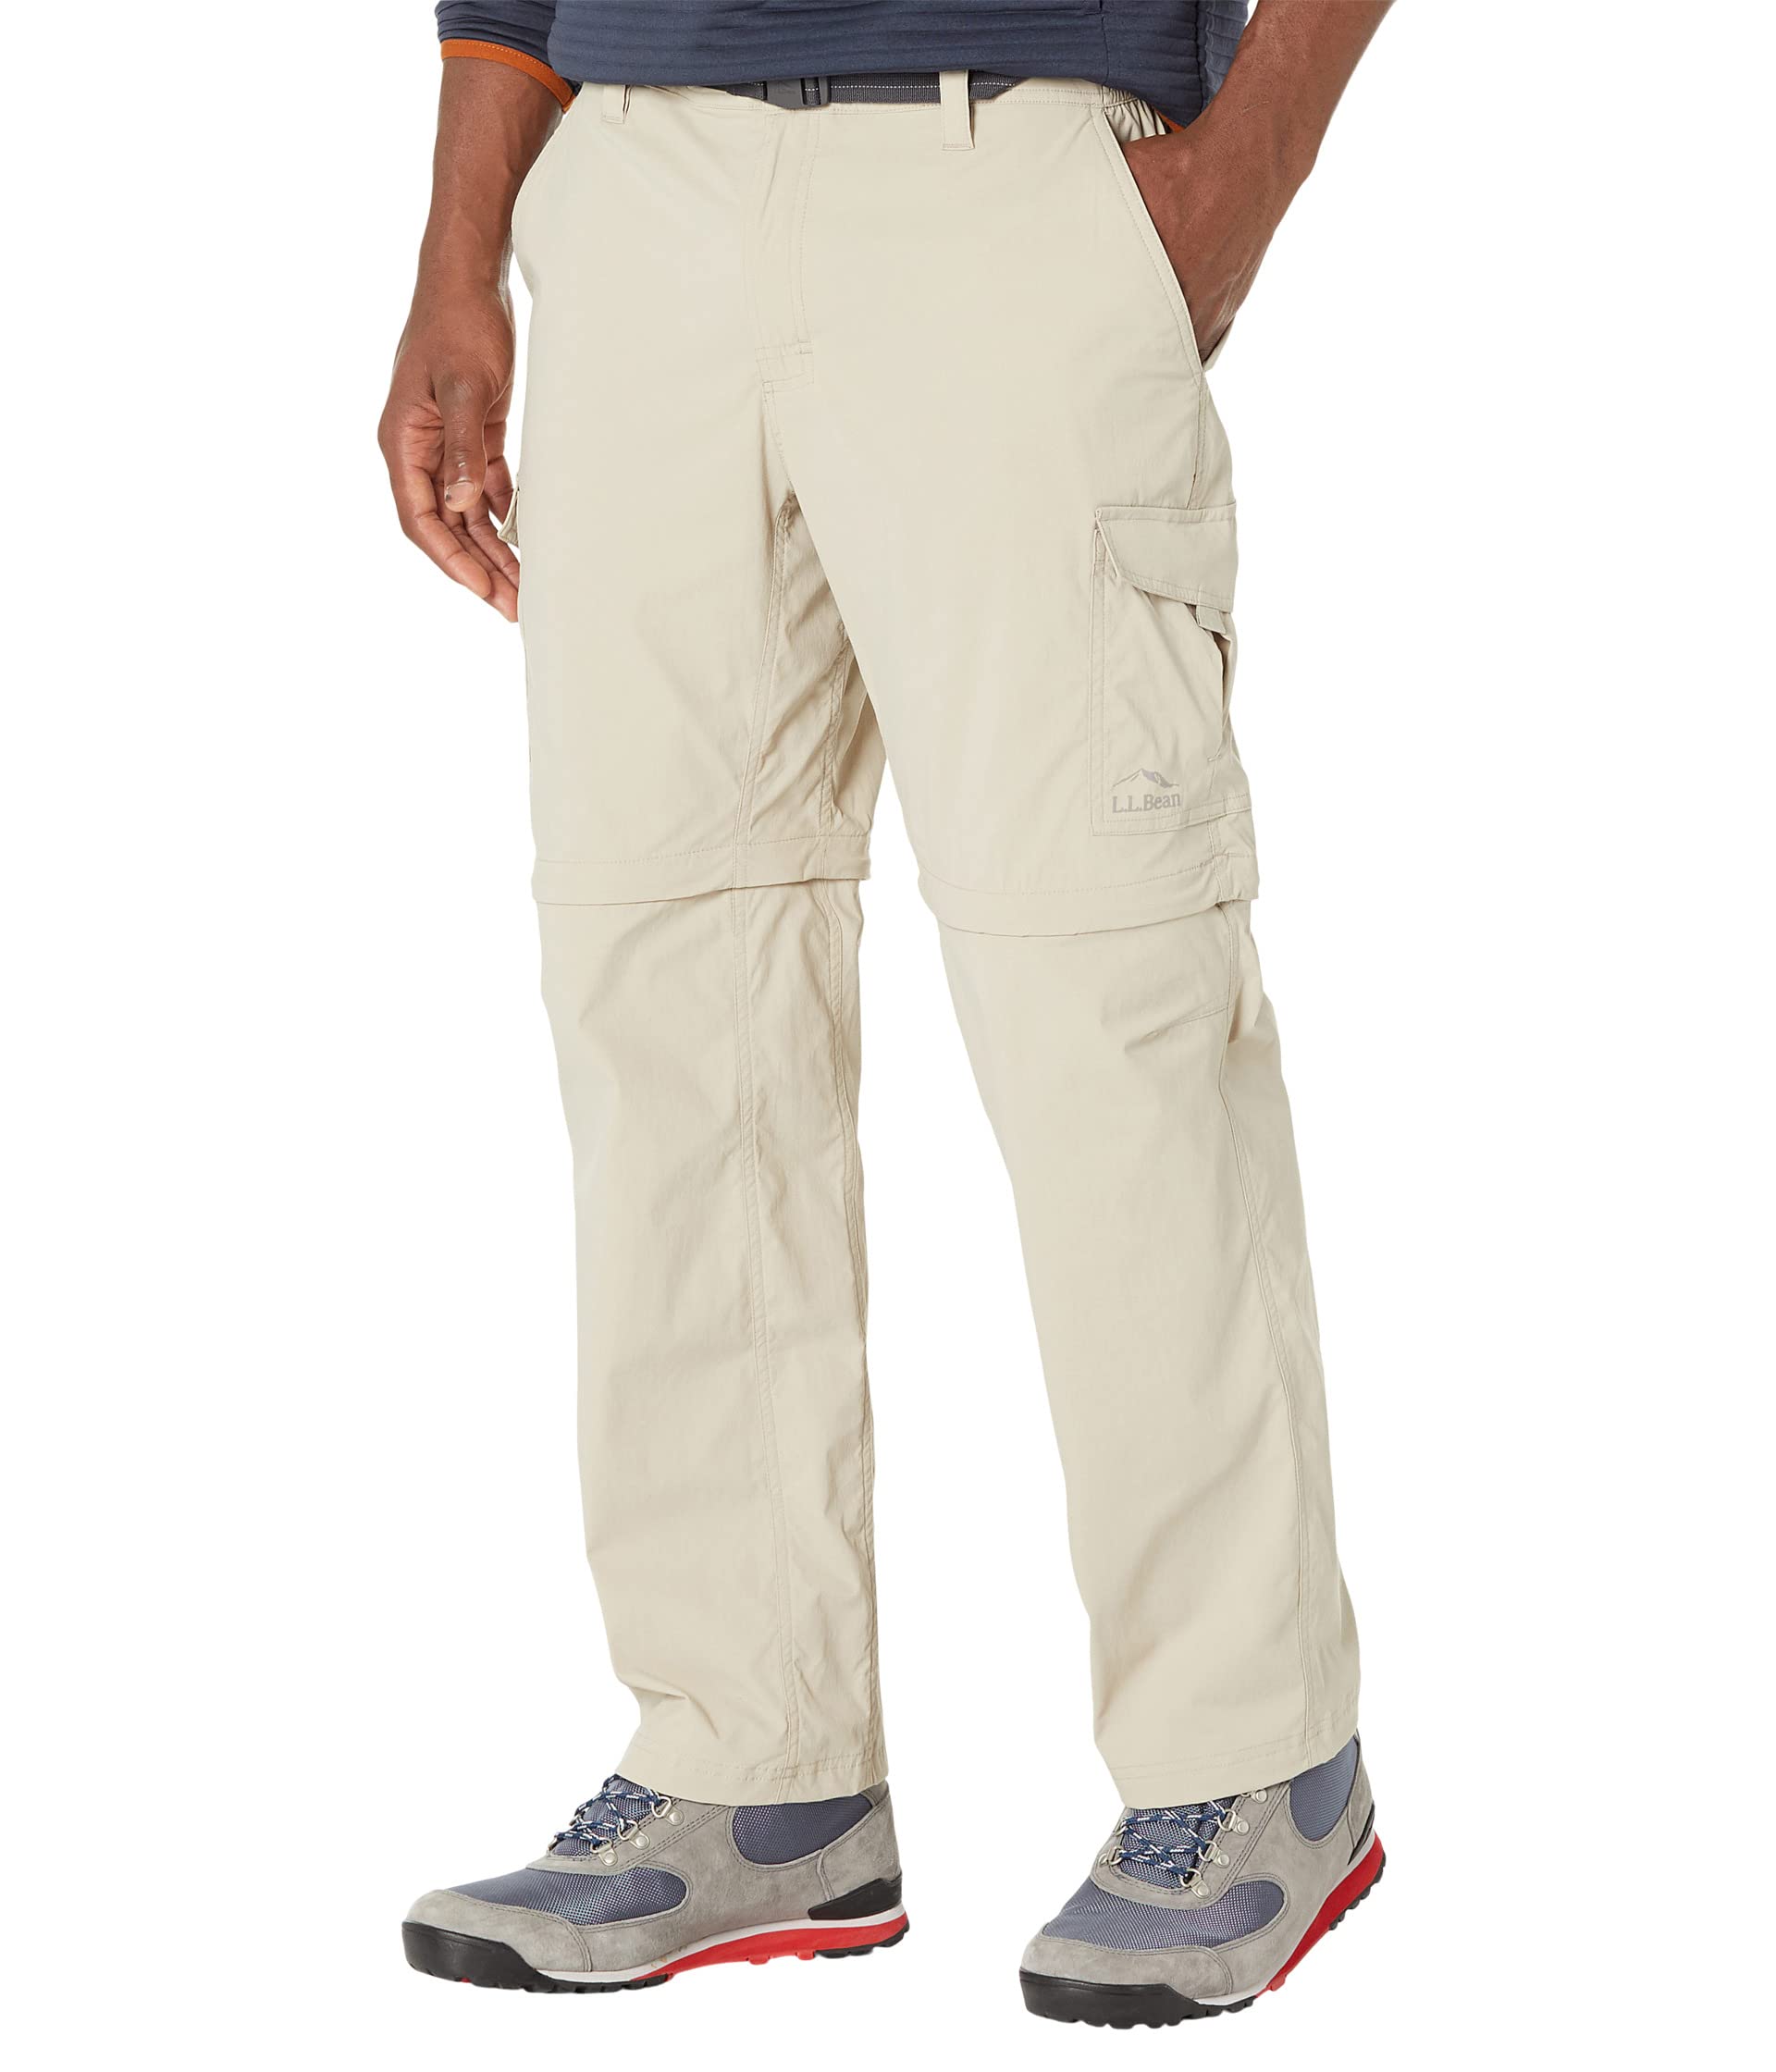 32-дюймовые брюки Tropicwear на молнии L.L.Bean